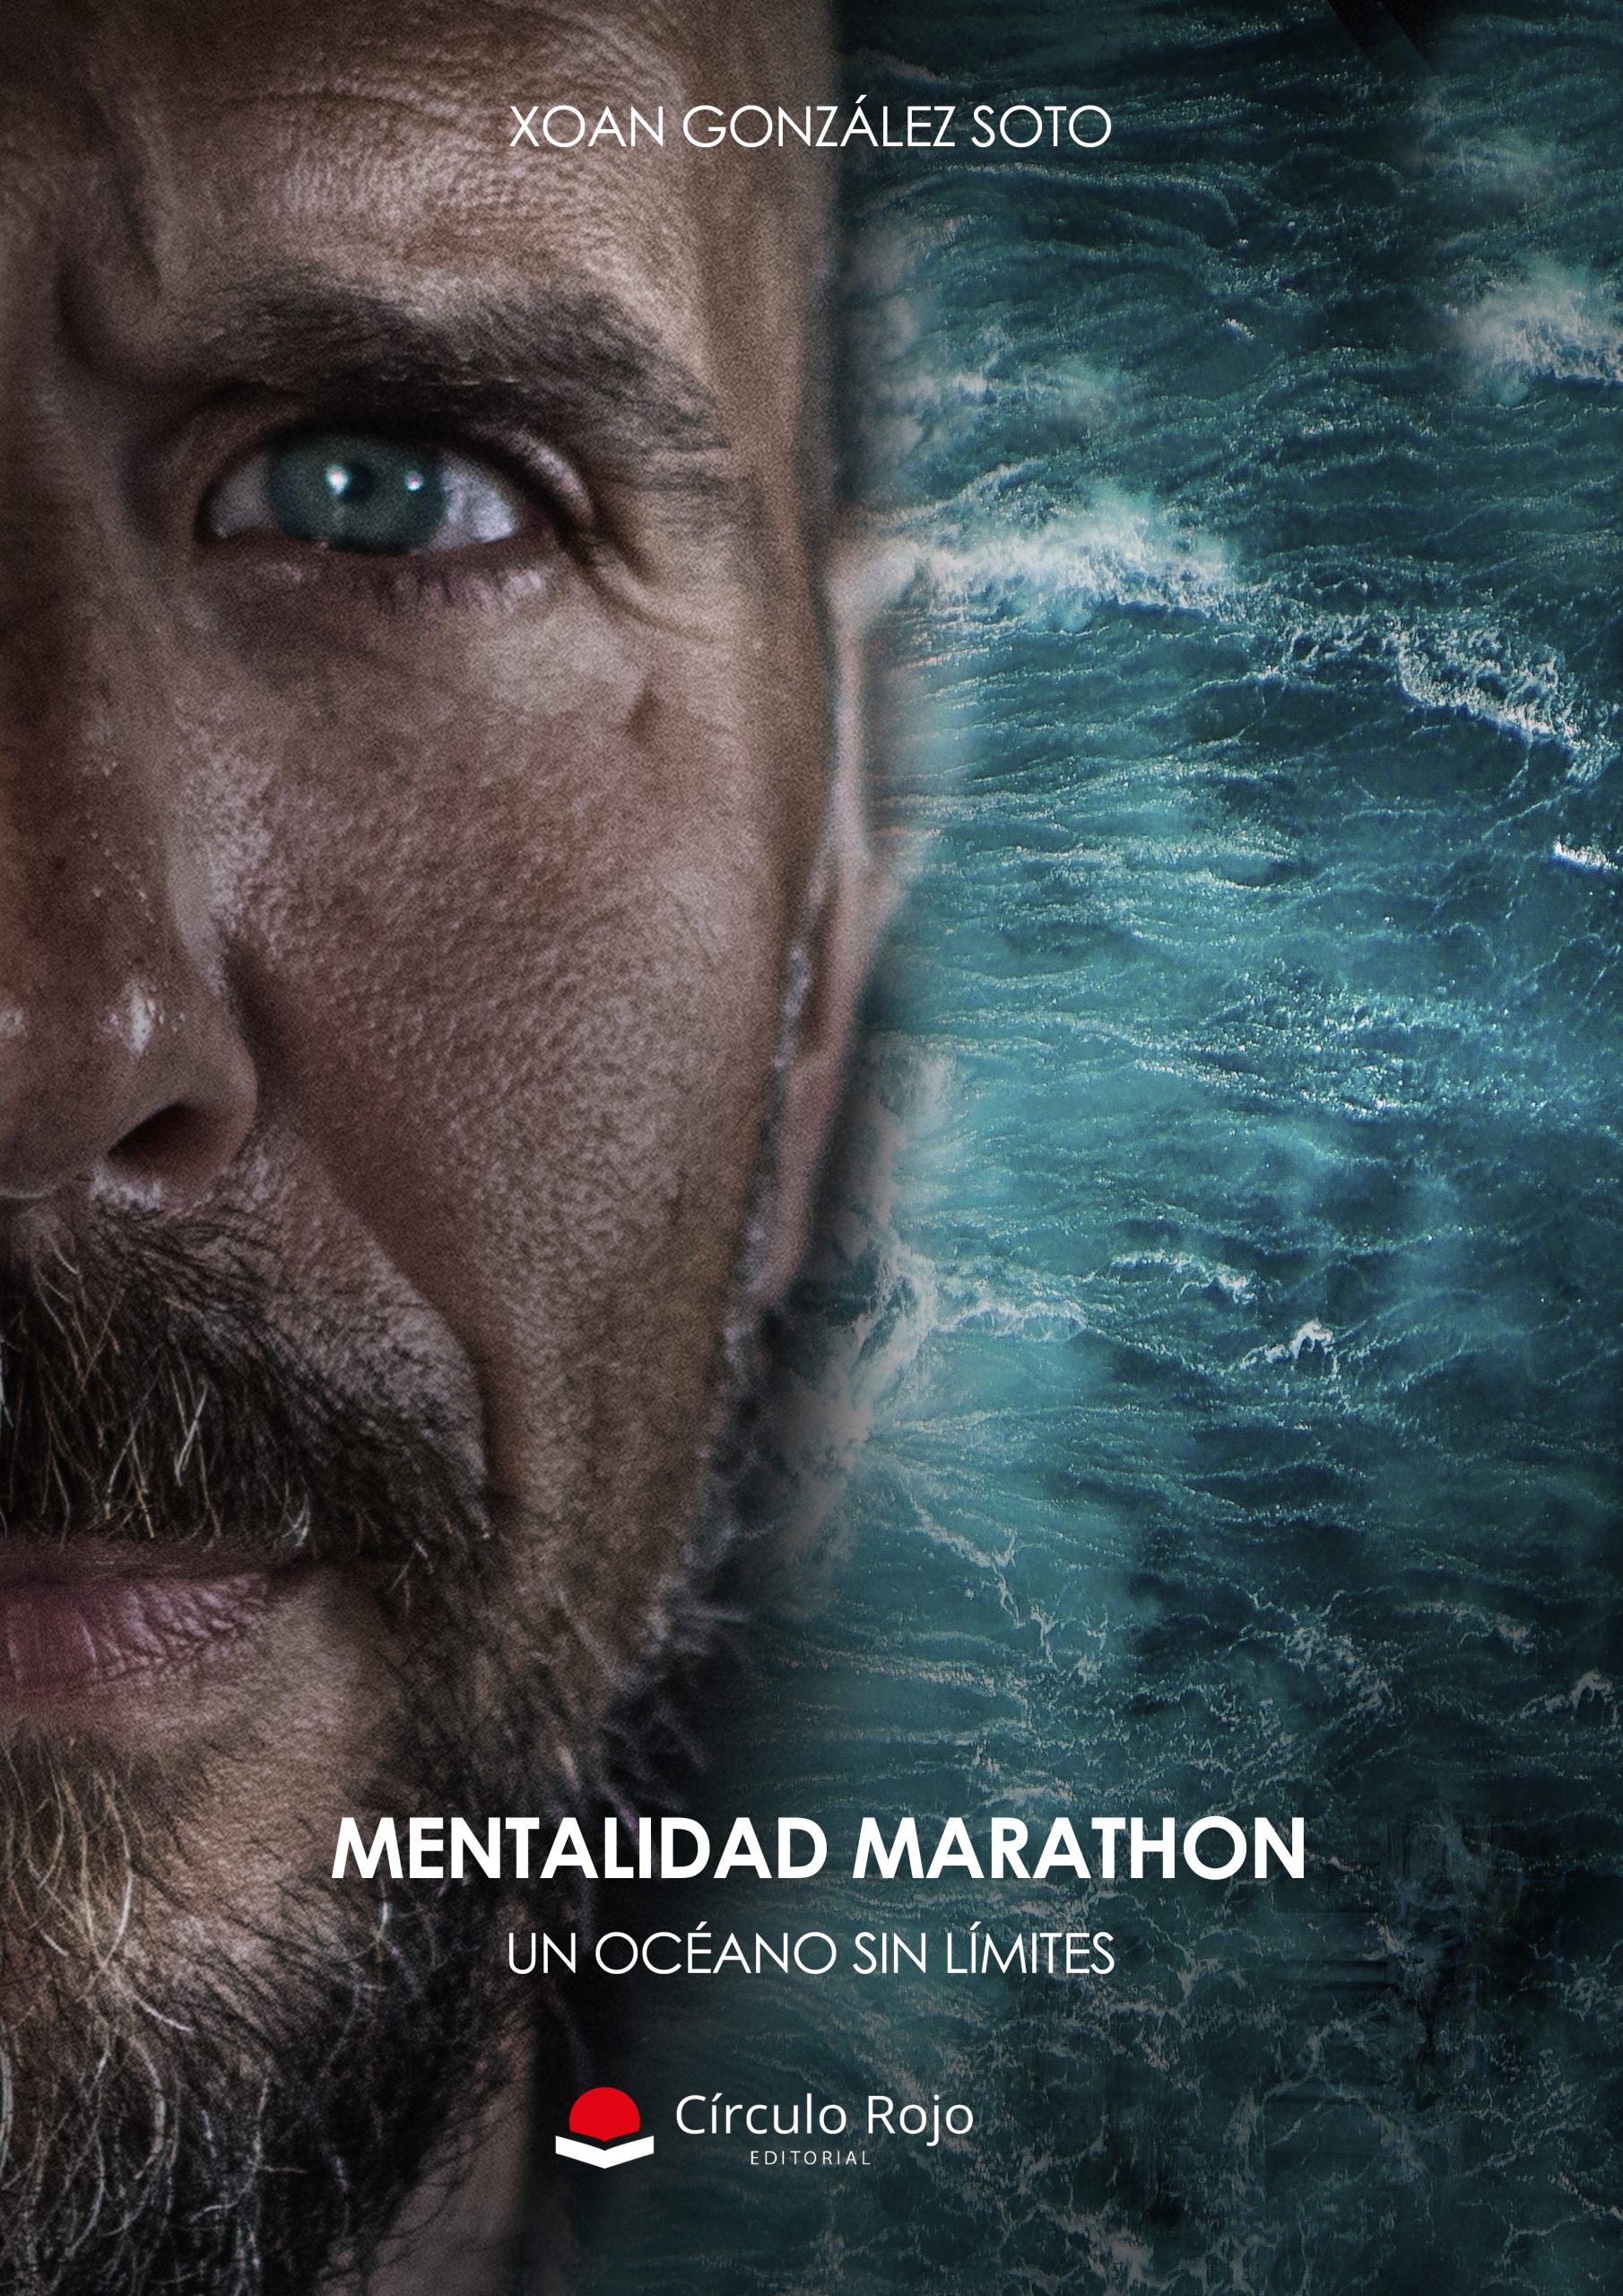 Xoan González, nos habla sobre “Mentalidad Marathon: Un océano sin límites”, obra que ha publicado con Círculo Rojo.